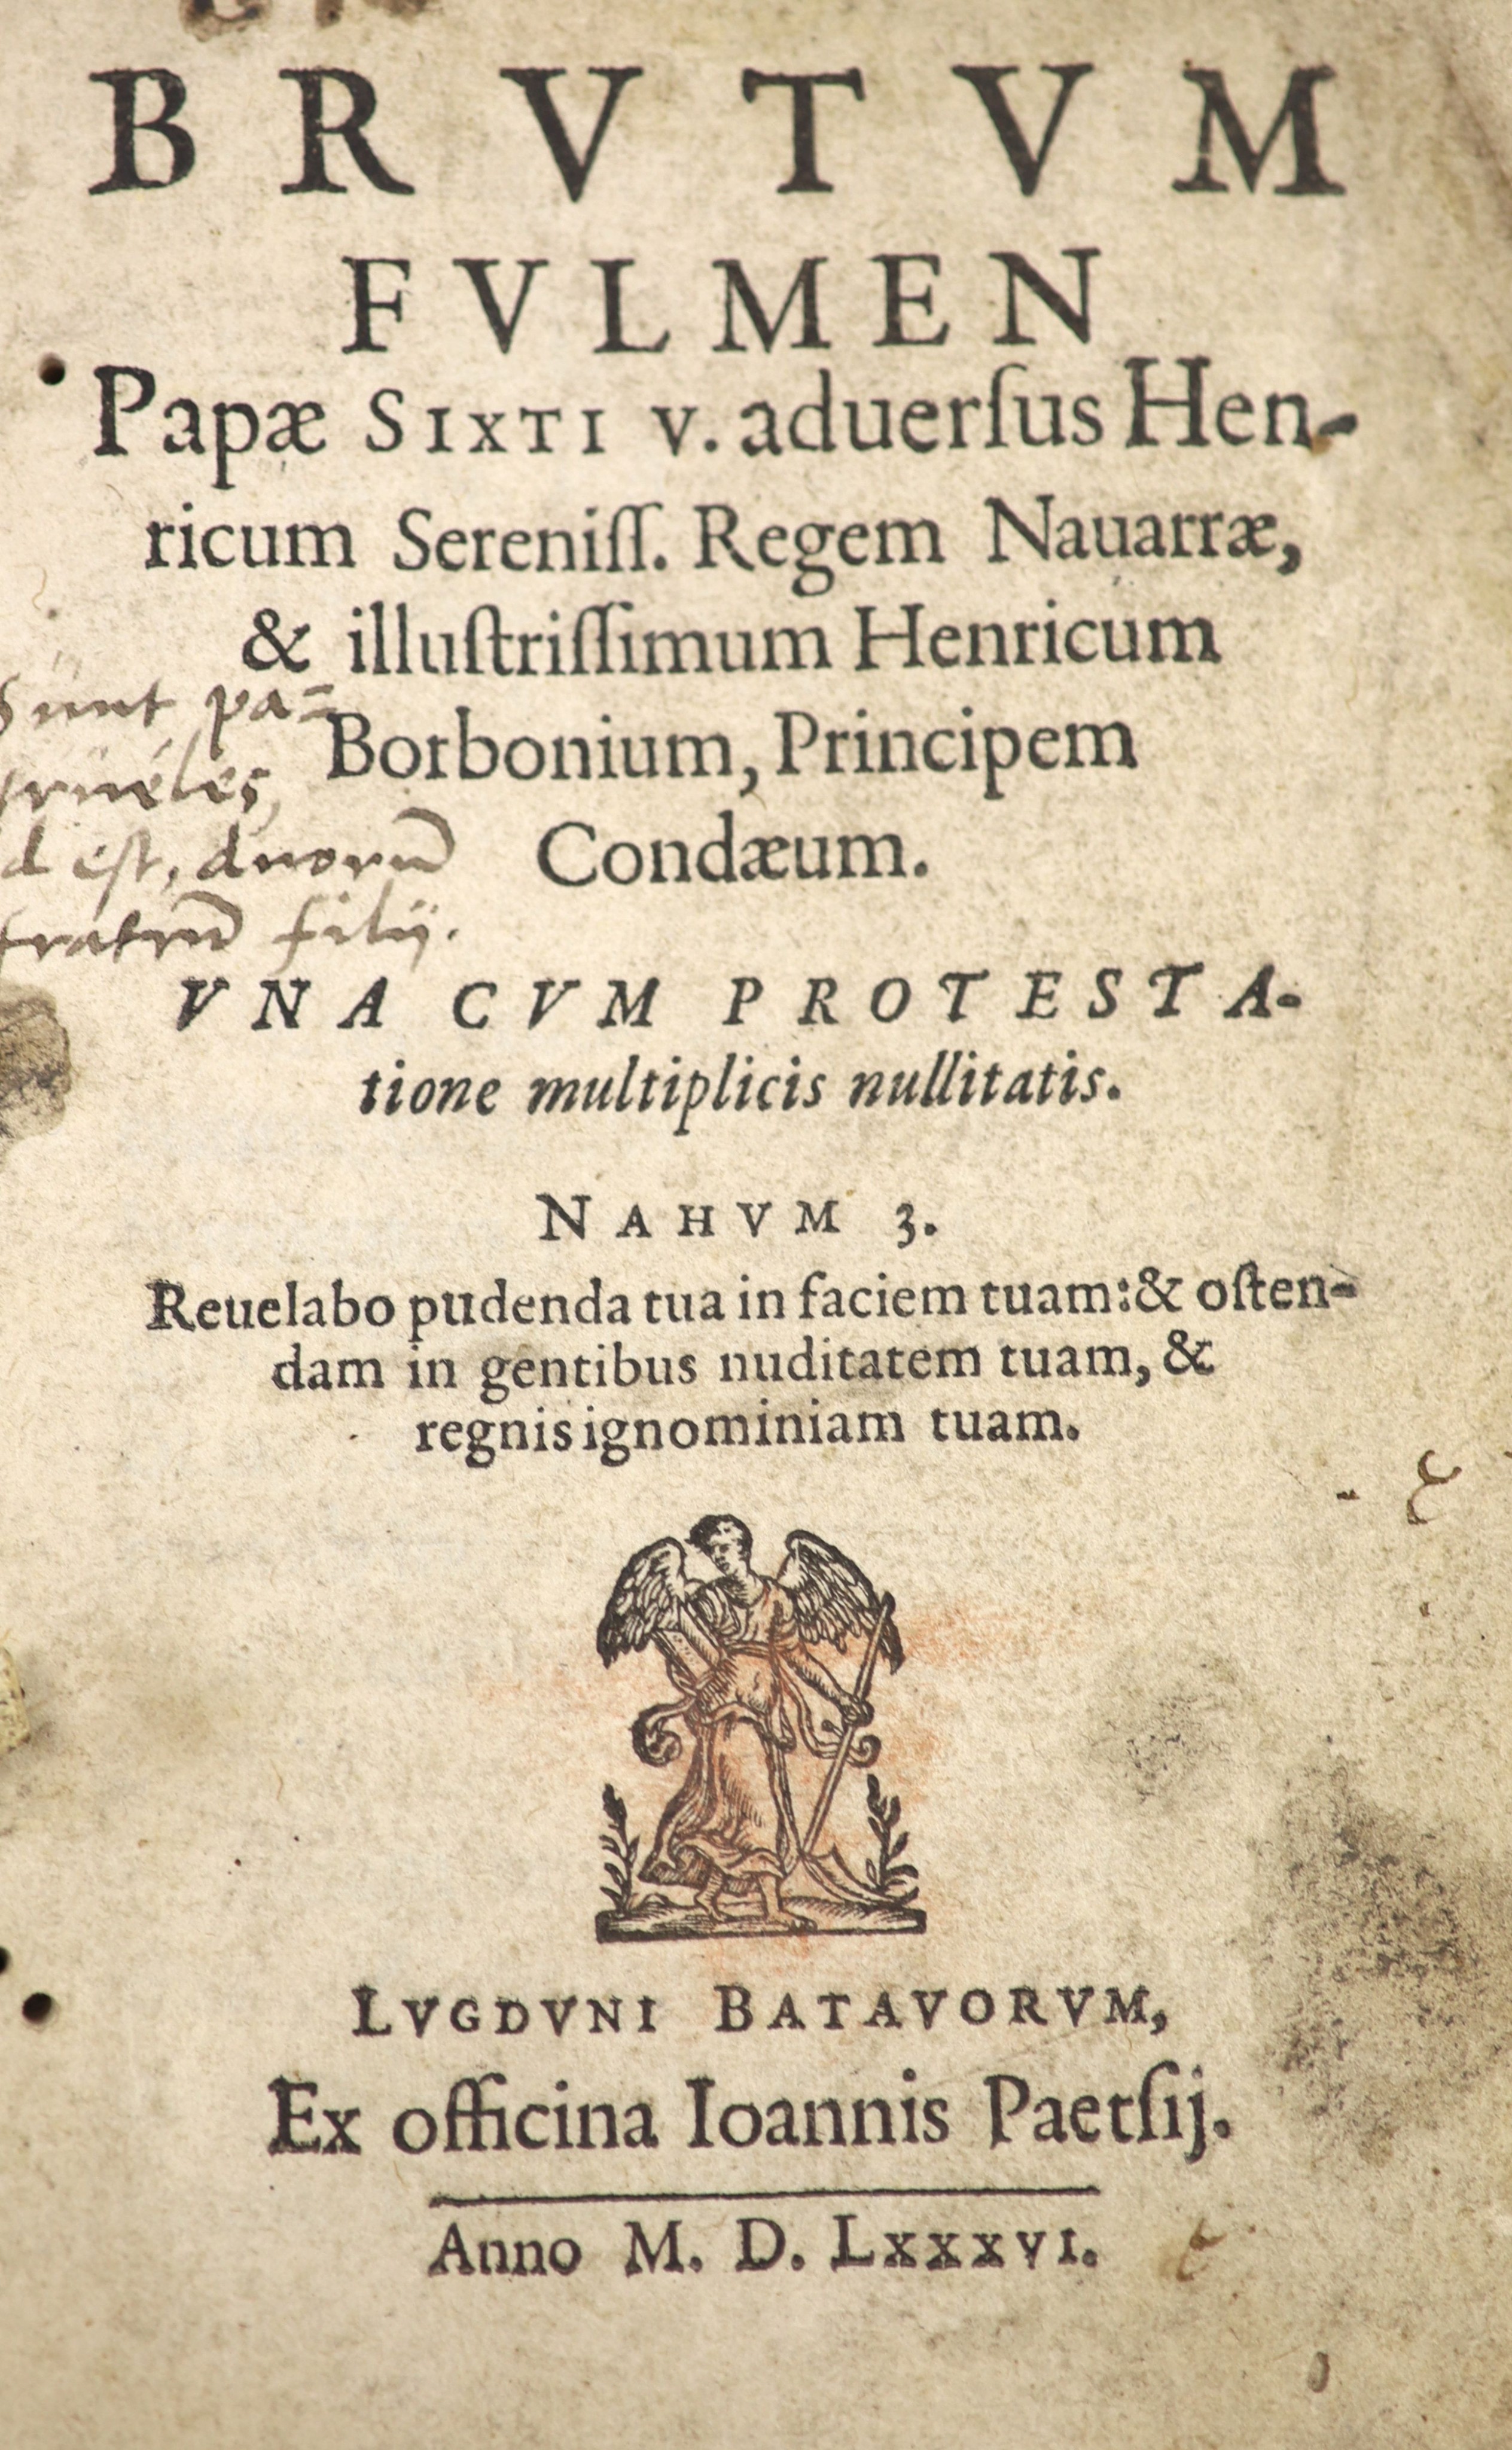 Hotman, Francois. Brutum Fulmen. Papae Sixti V. adversus Henricum Sereniss. Regem Navarrae, and Illustrissimum Henricum Borbonium ...